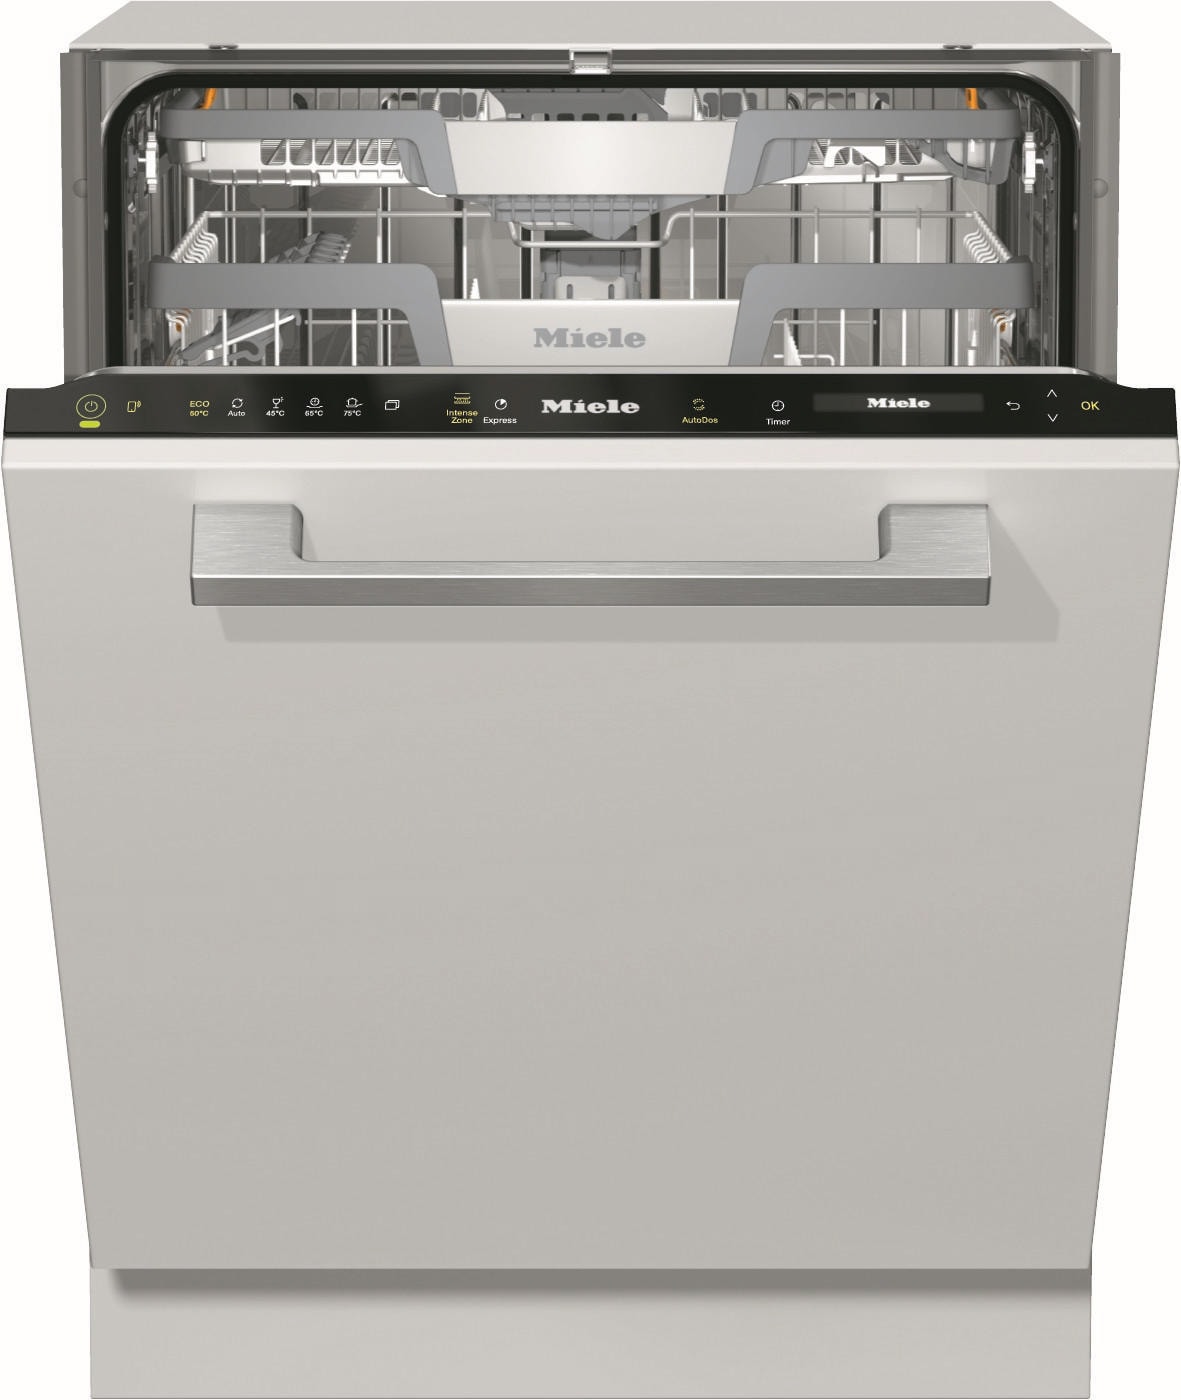 Lave vaisselle Miele - Concept Achat - G7410SC